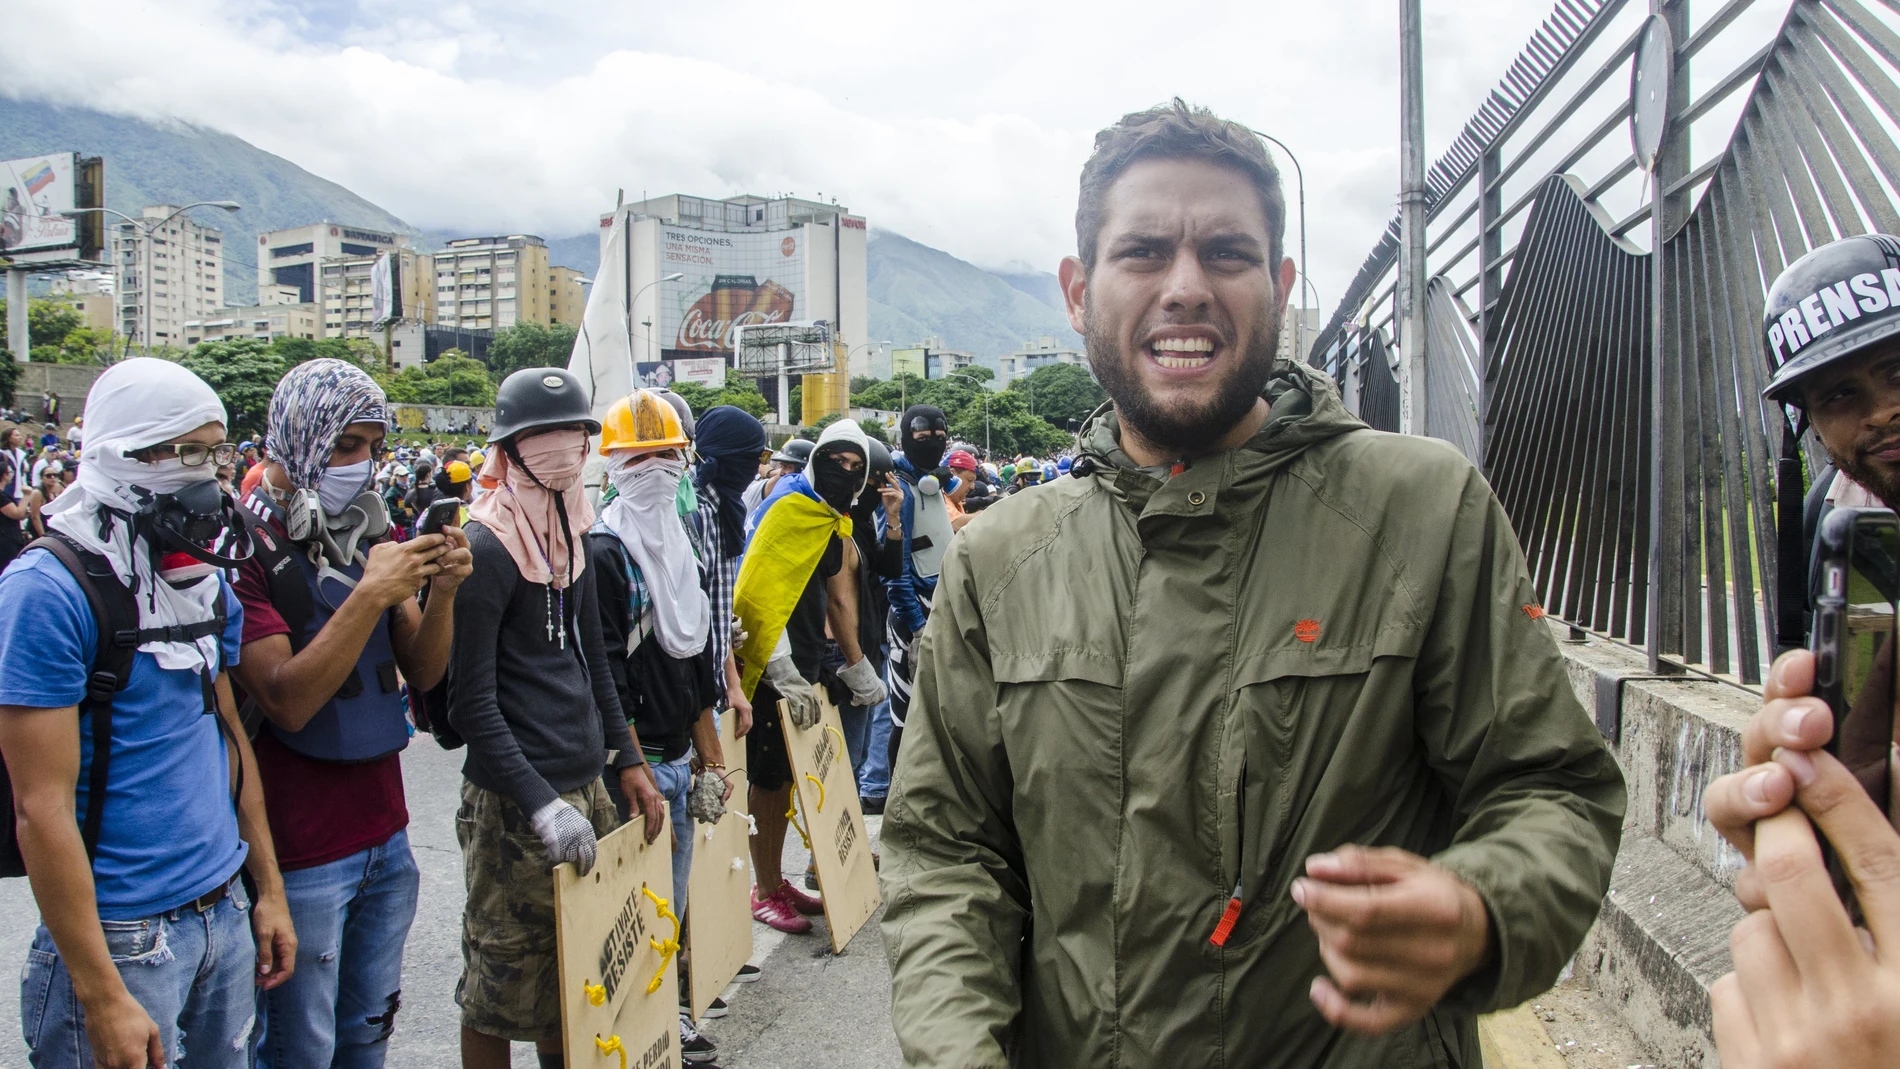 Venezuela.- Liberados en Venezuela cinco presos tras el alivio de sanciones, entre ellos Roland Carreño y Juan Requesens